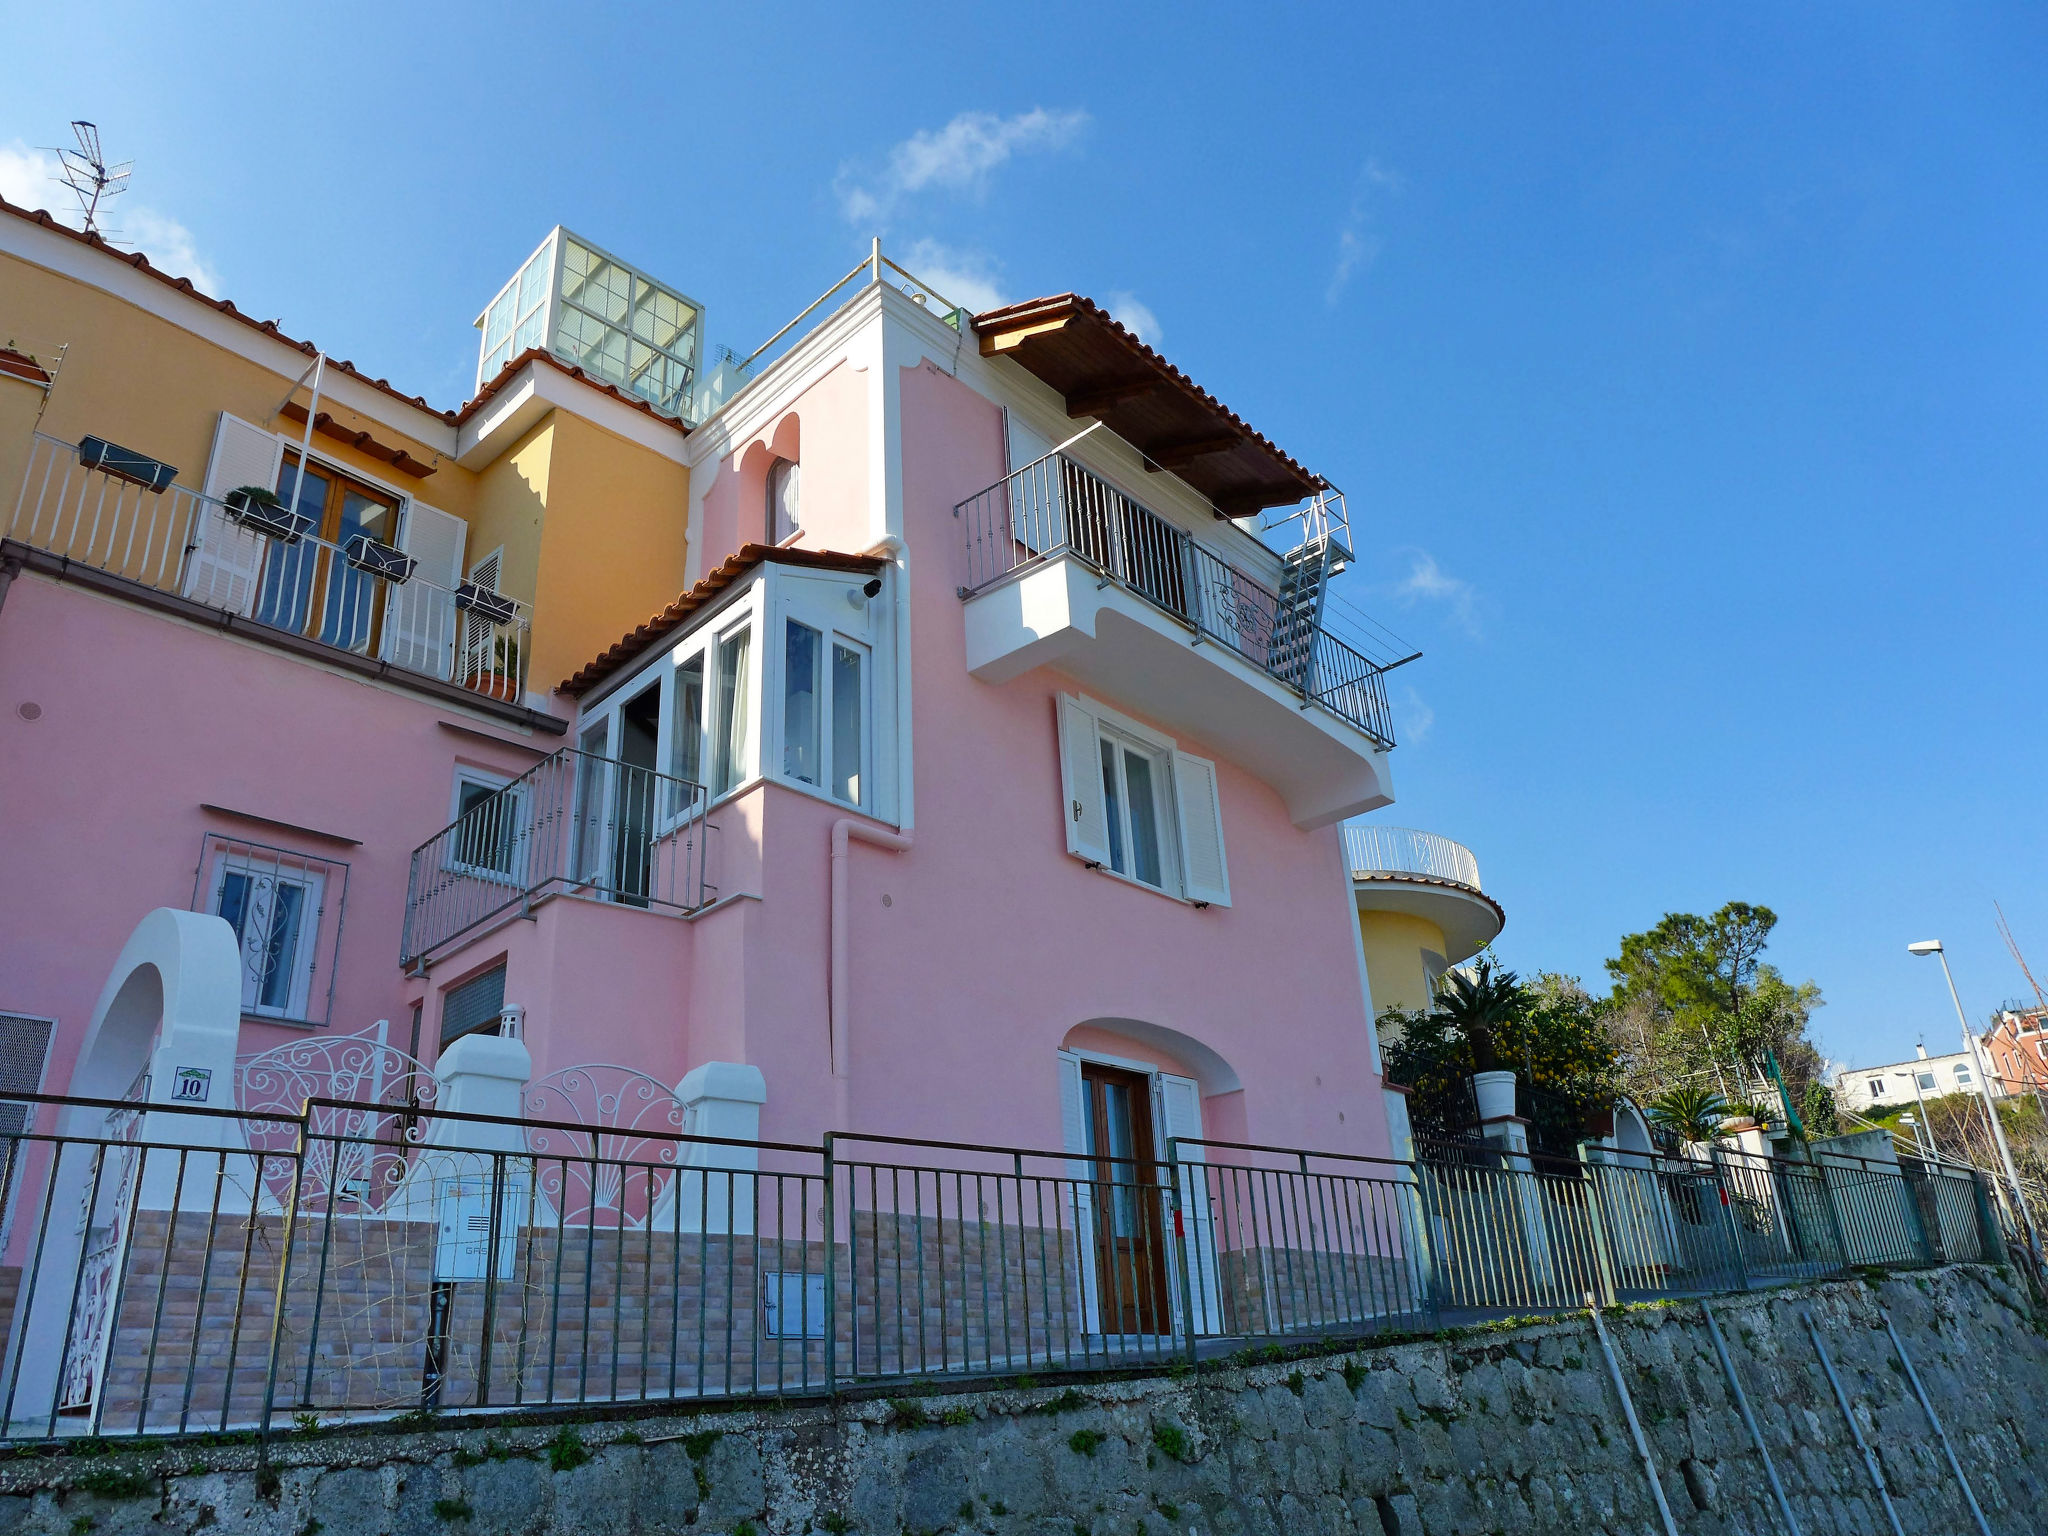 The Pink Ischia in Ischia - Ischia